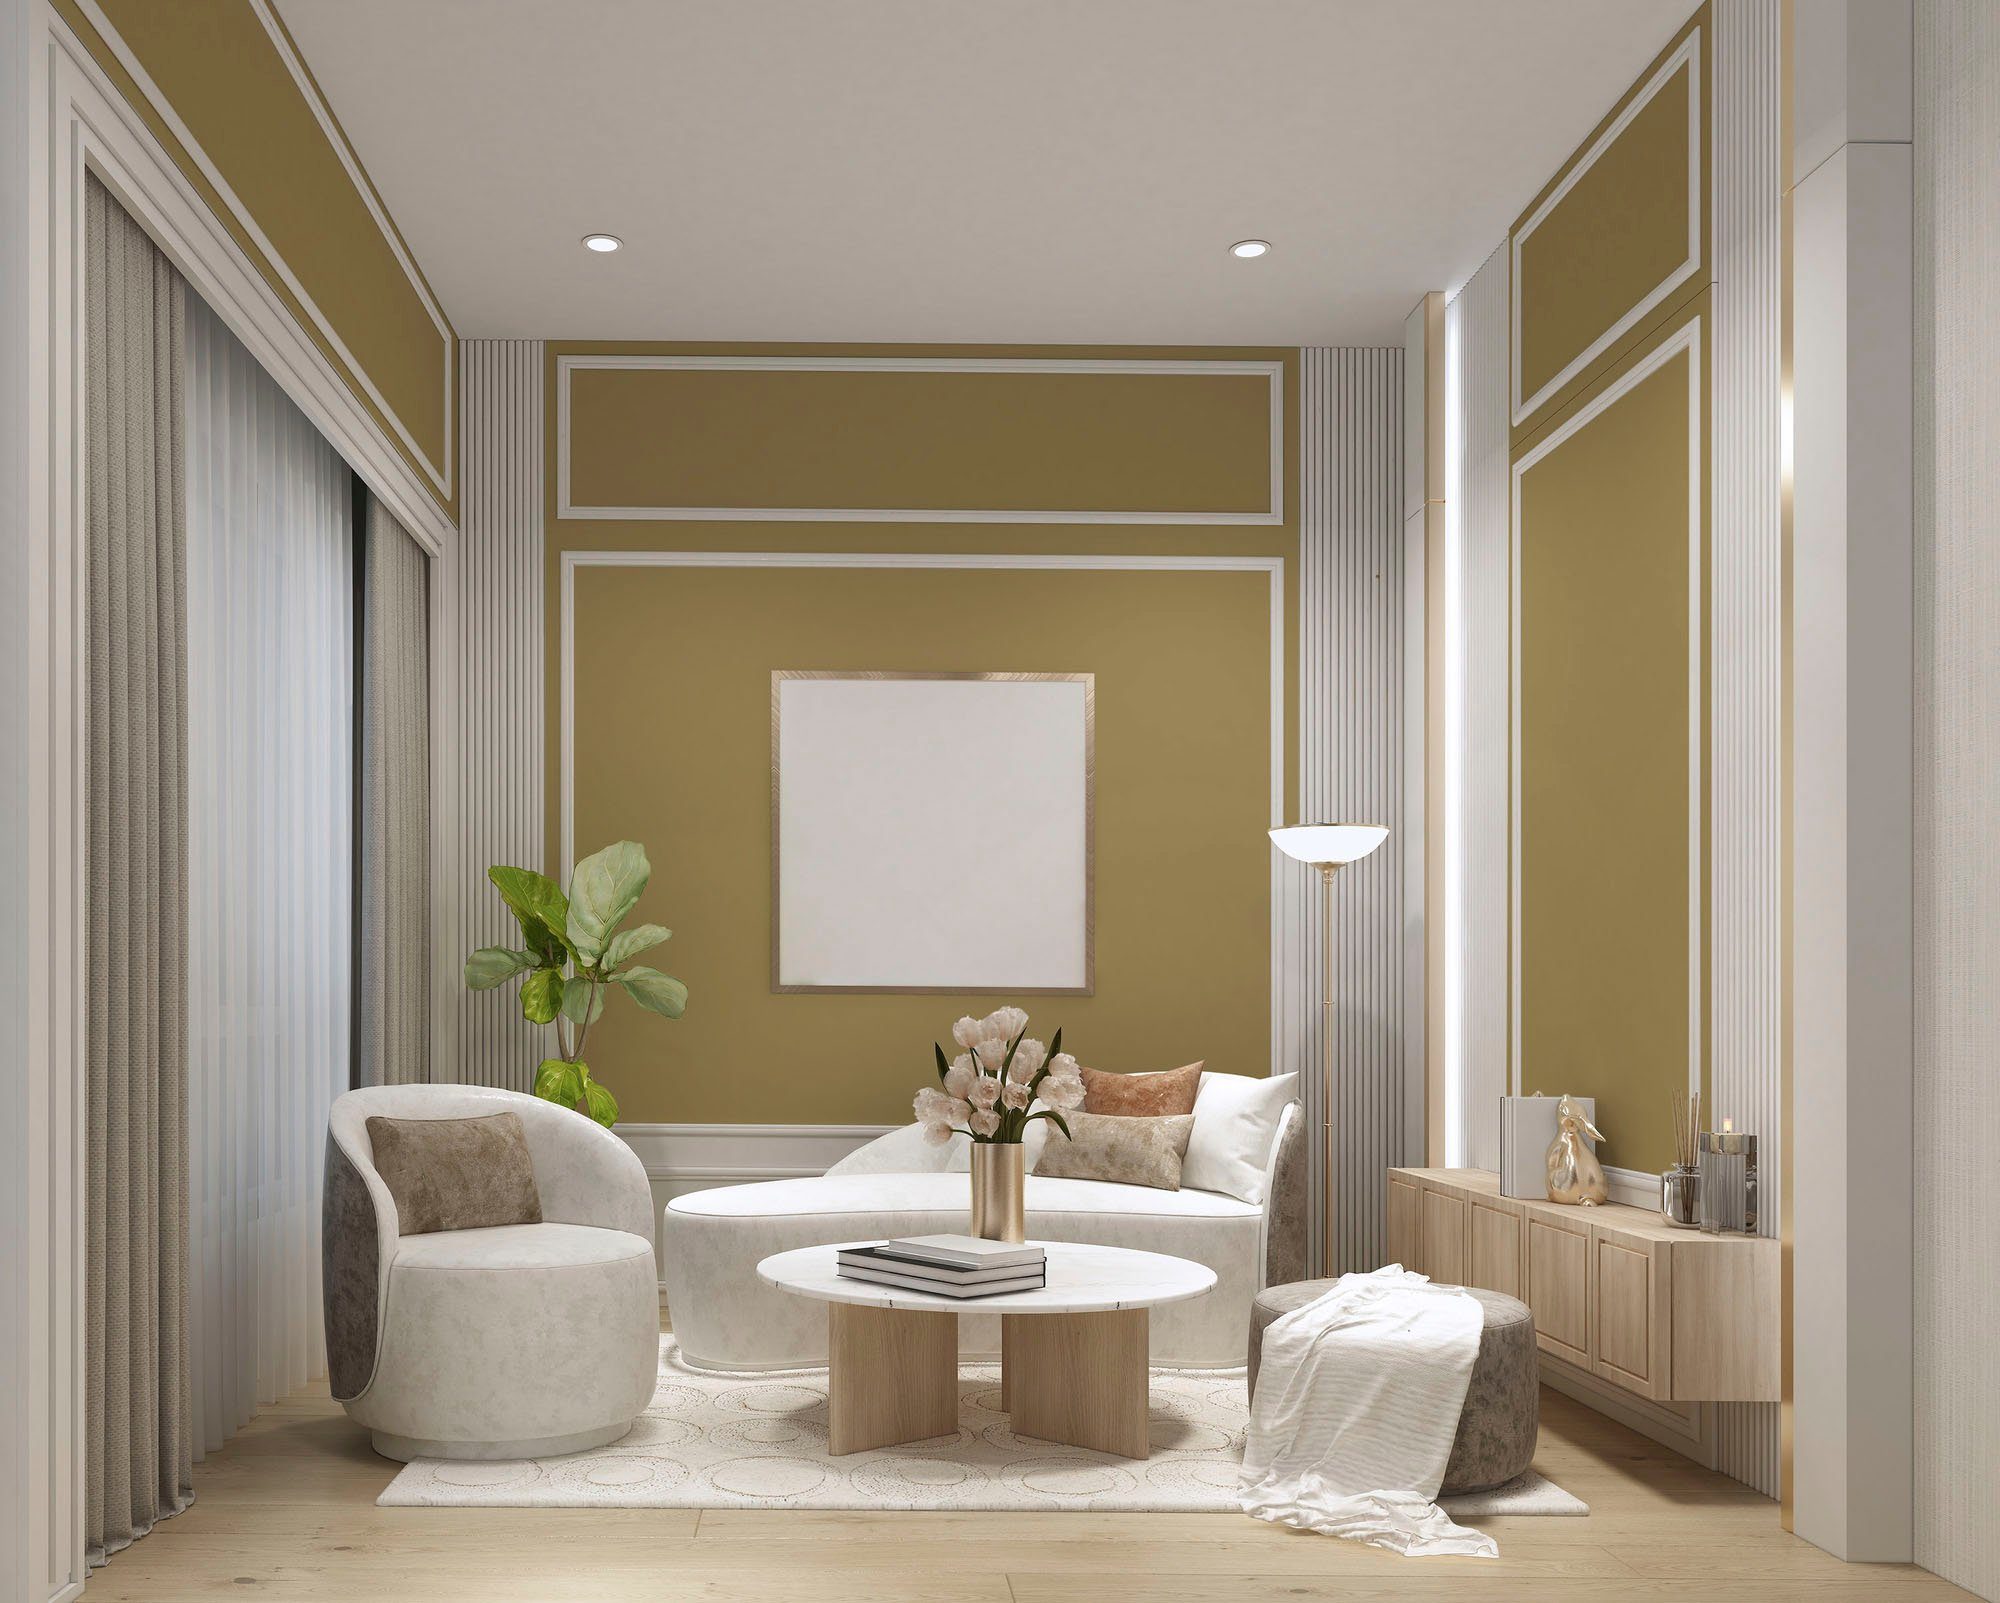 Wohnzimmer, c6005 Innenwandfarbe Küche, lime, A.S. Farbwelt Schlafzimmer, Grün Flur Wandfarbe und Premium Création PURO Tuchmatt gentle lime gentle für ideal